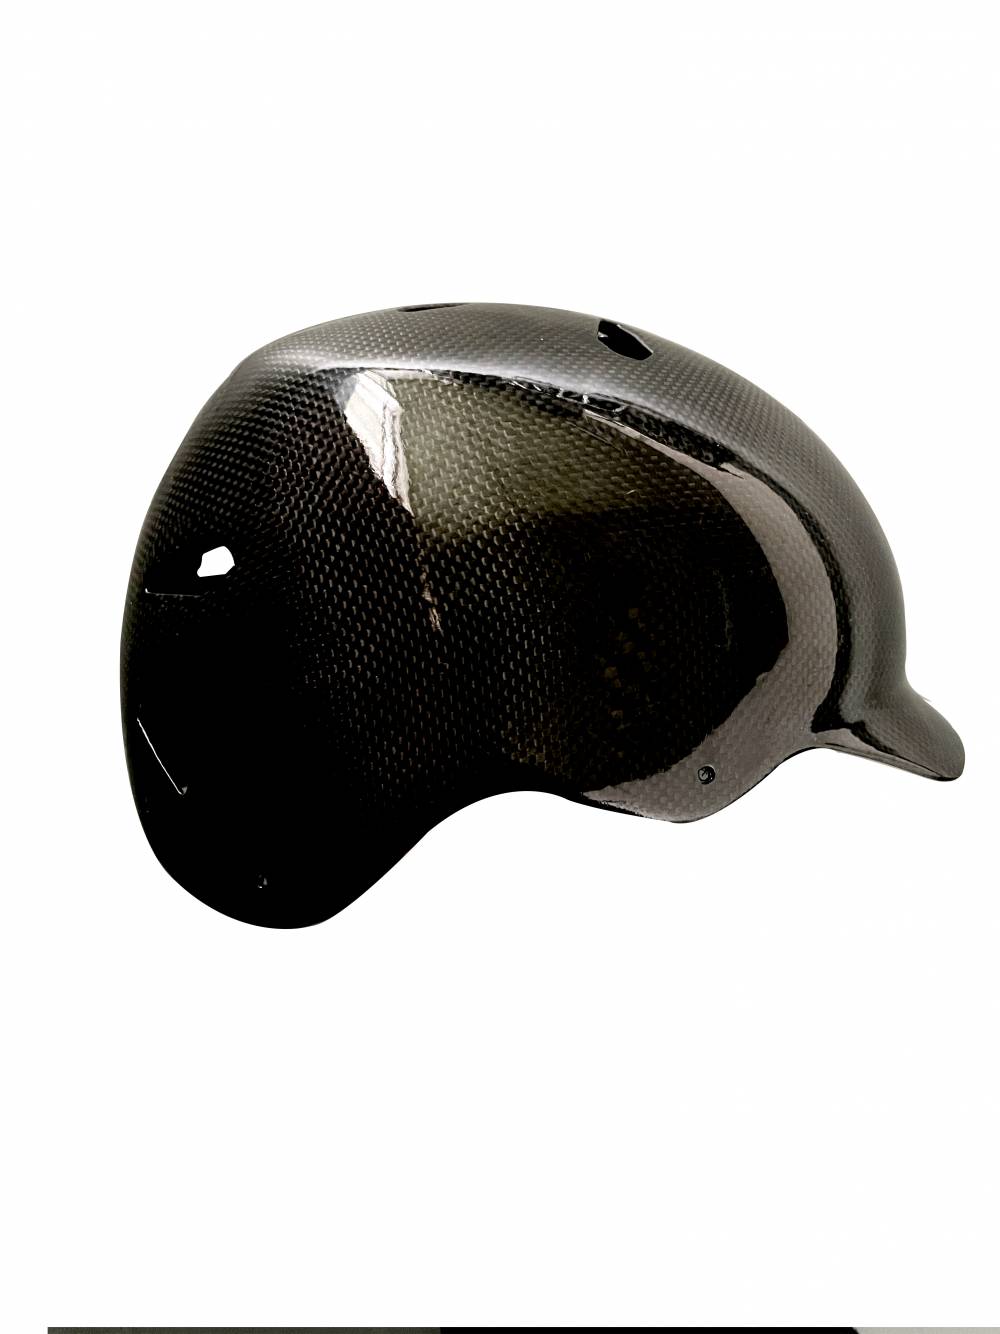 碳纤维公安消防全盔碳纤维防弹头盔碳纤维警用头盔加工定制